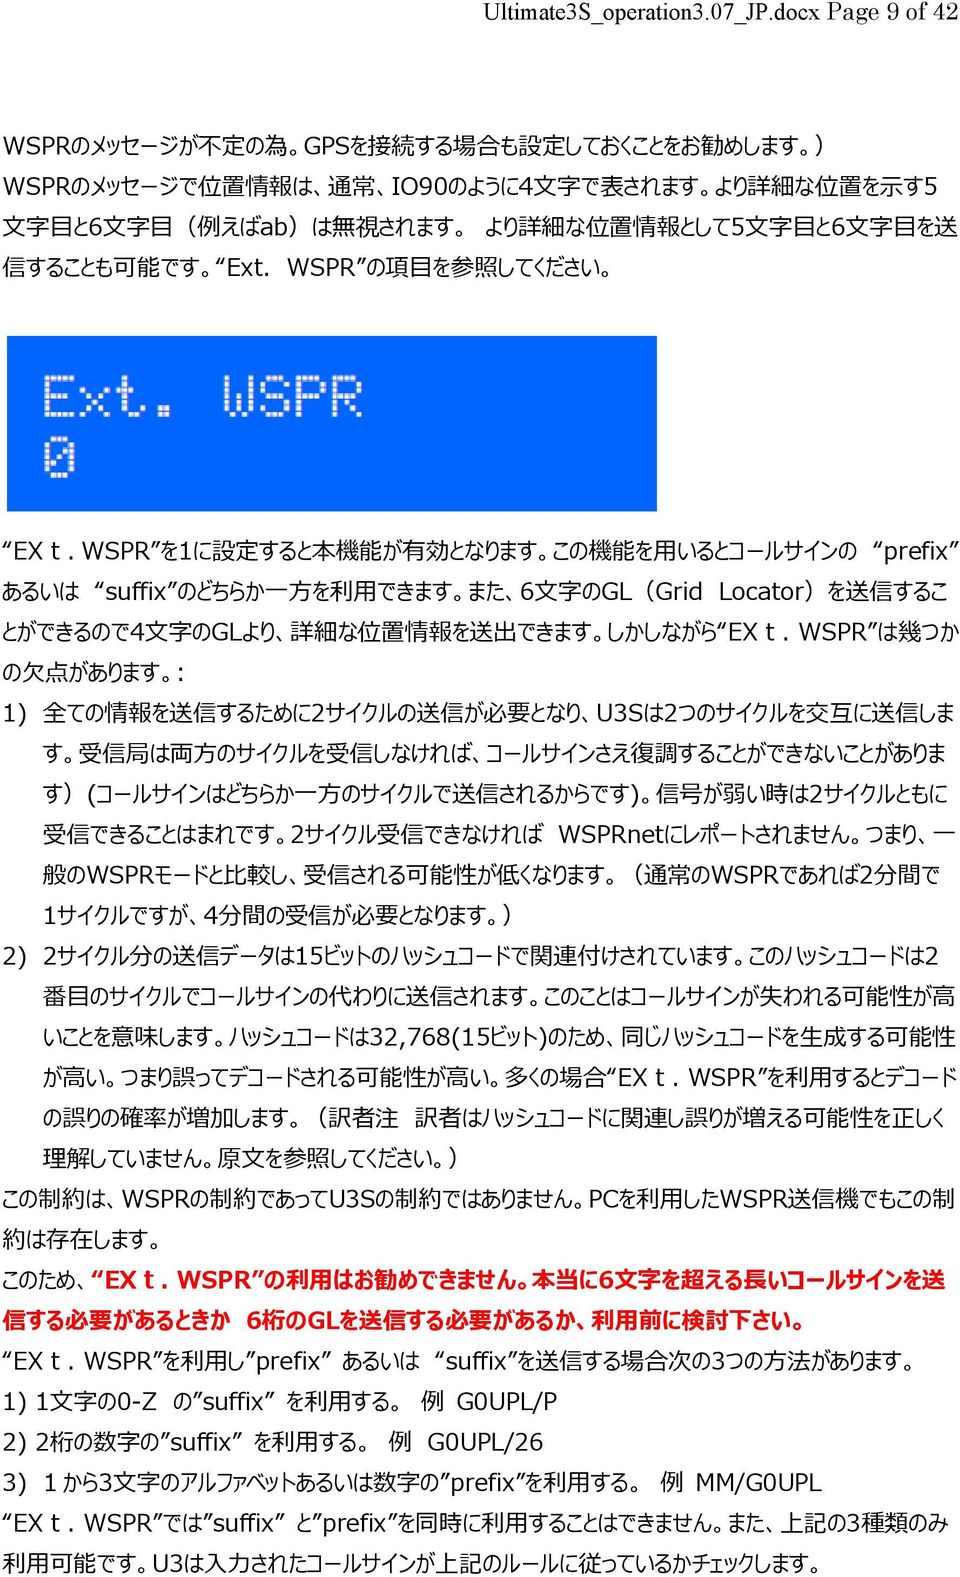 として5 文 字 目 と6 文 字 目 を 送 信 することも 可 能 です Ext. WSPR の 項 目 を 参 照 してください EXt.